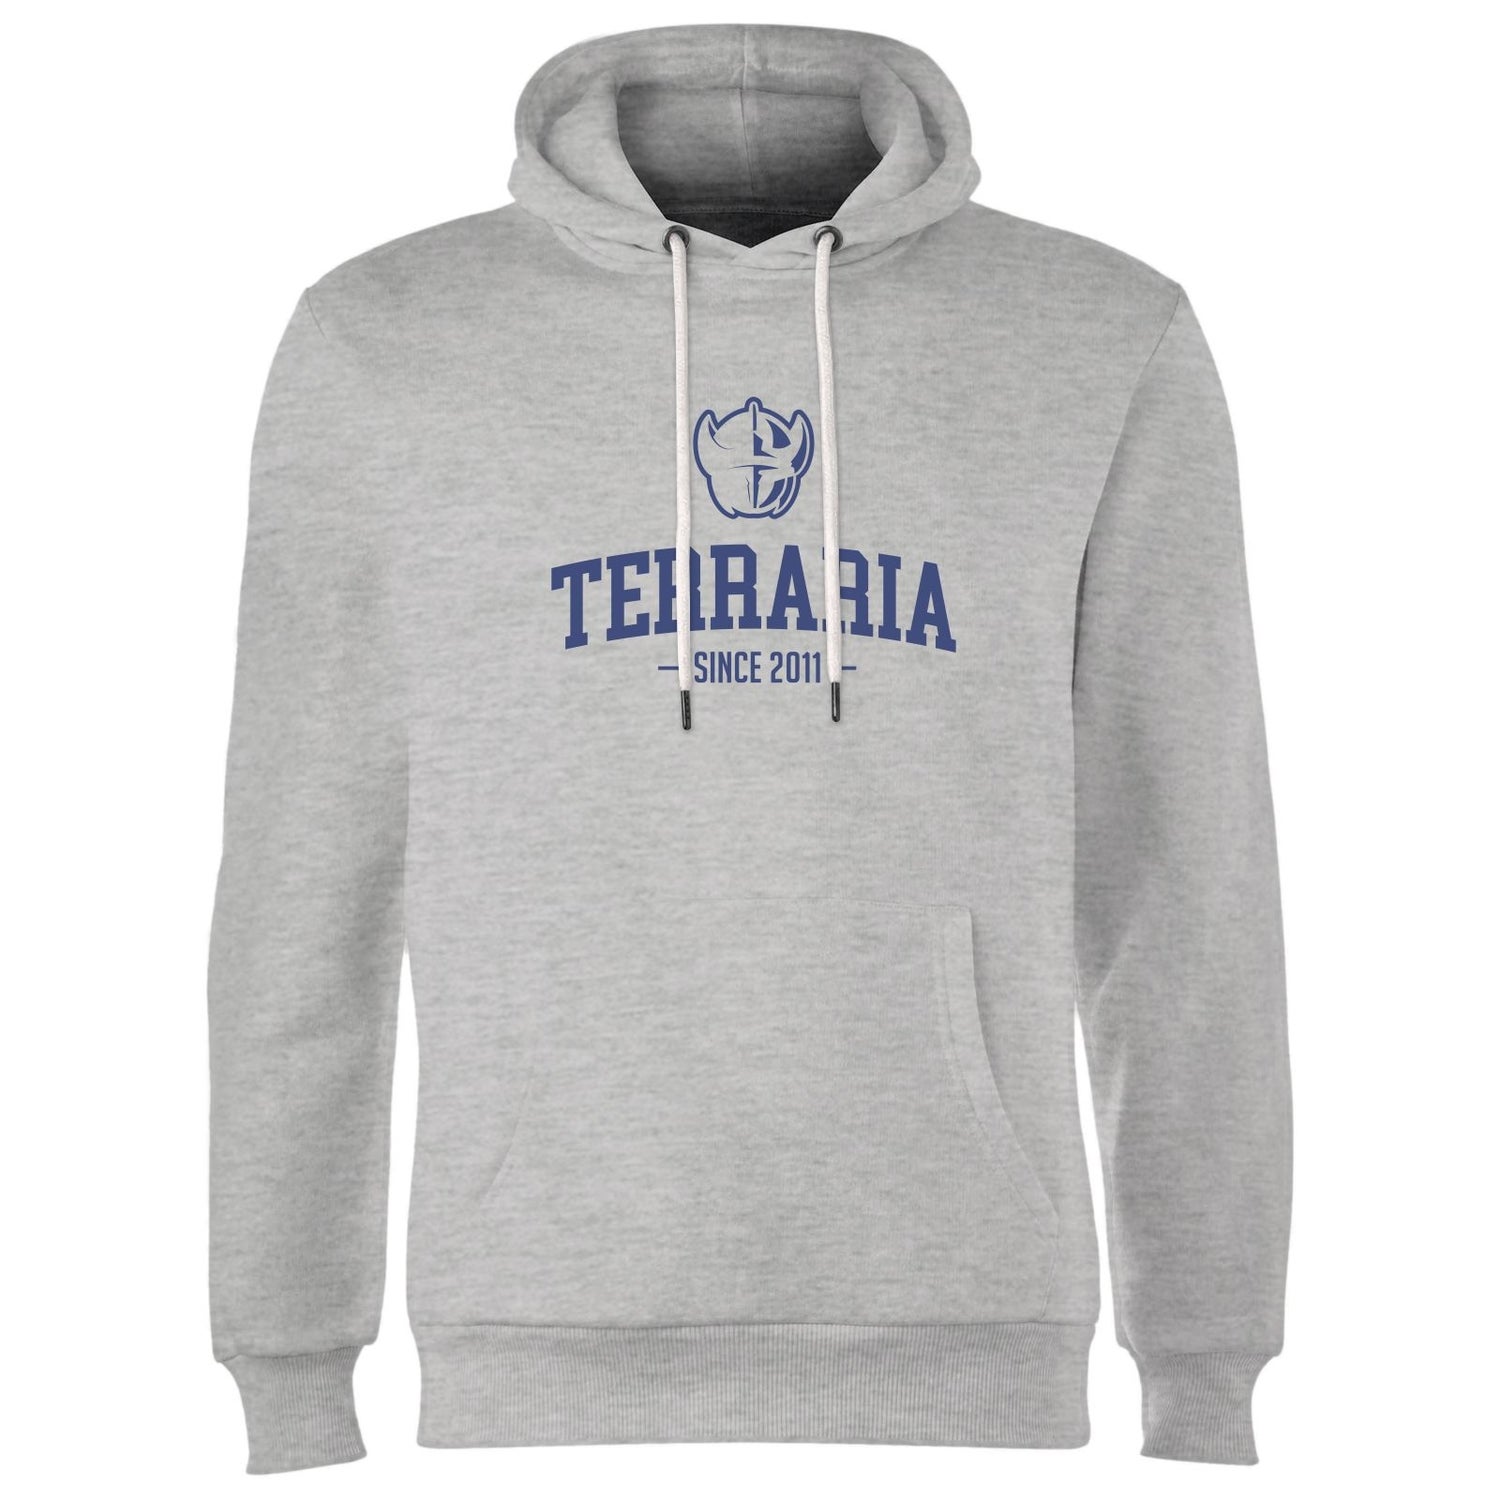 Terraria Since 2011 Hoodie - Grey